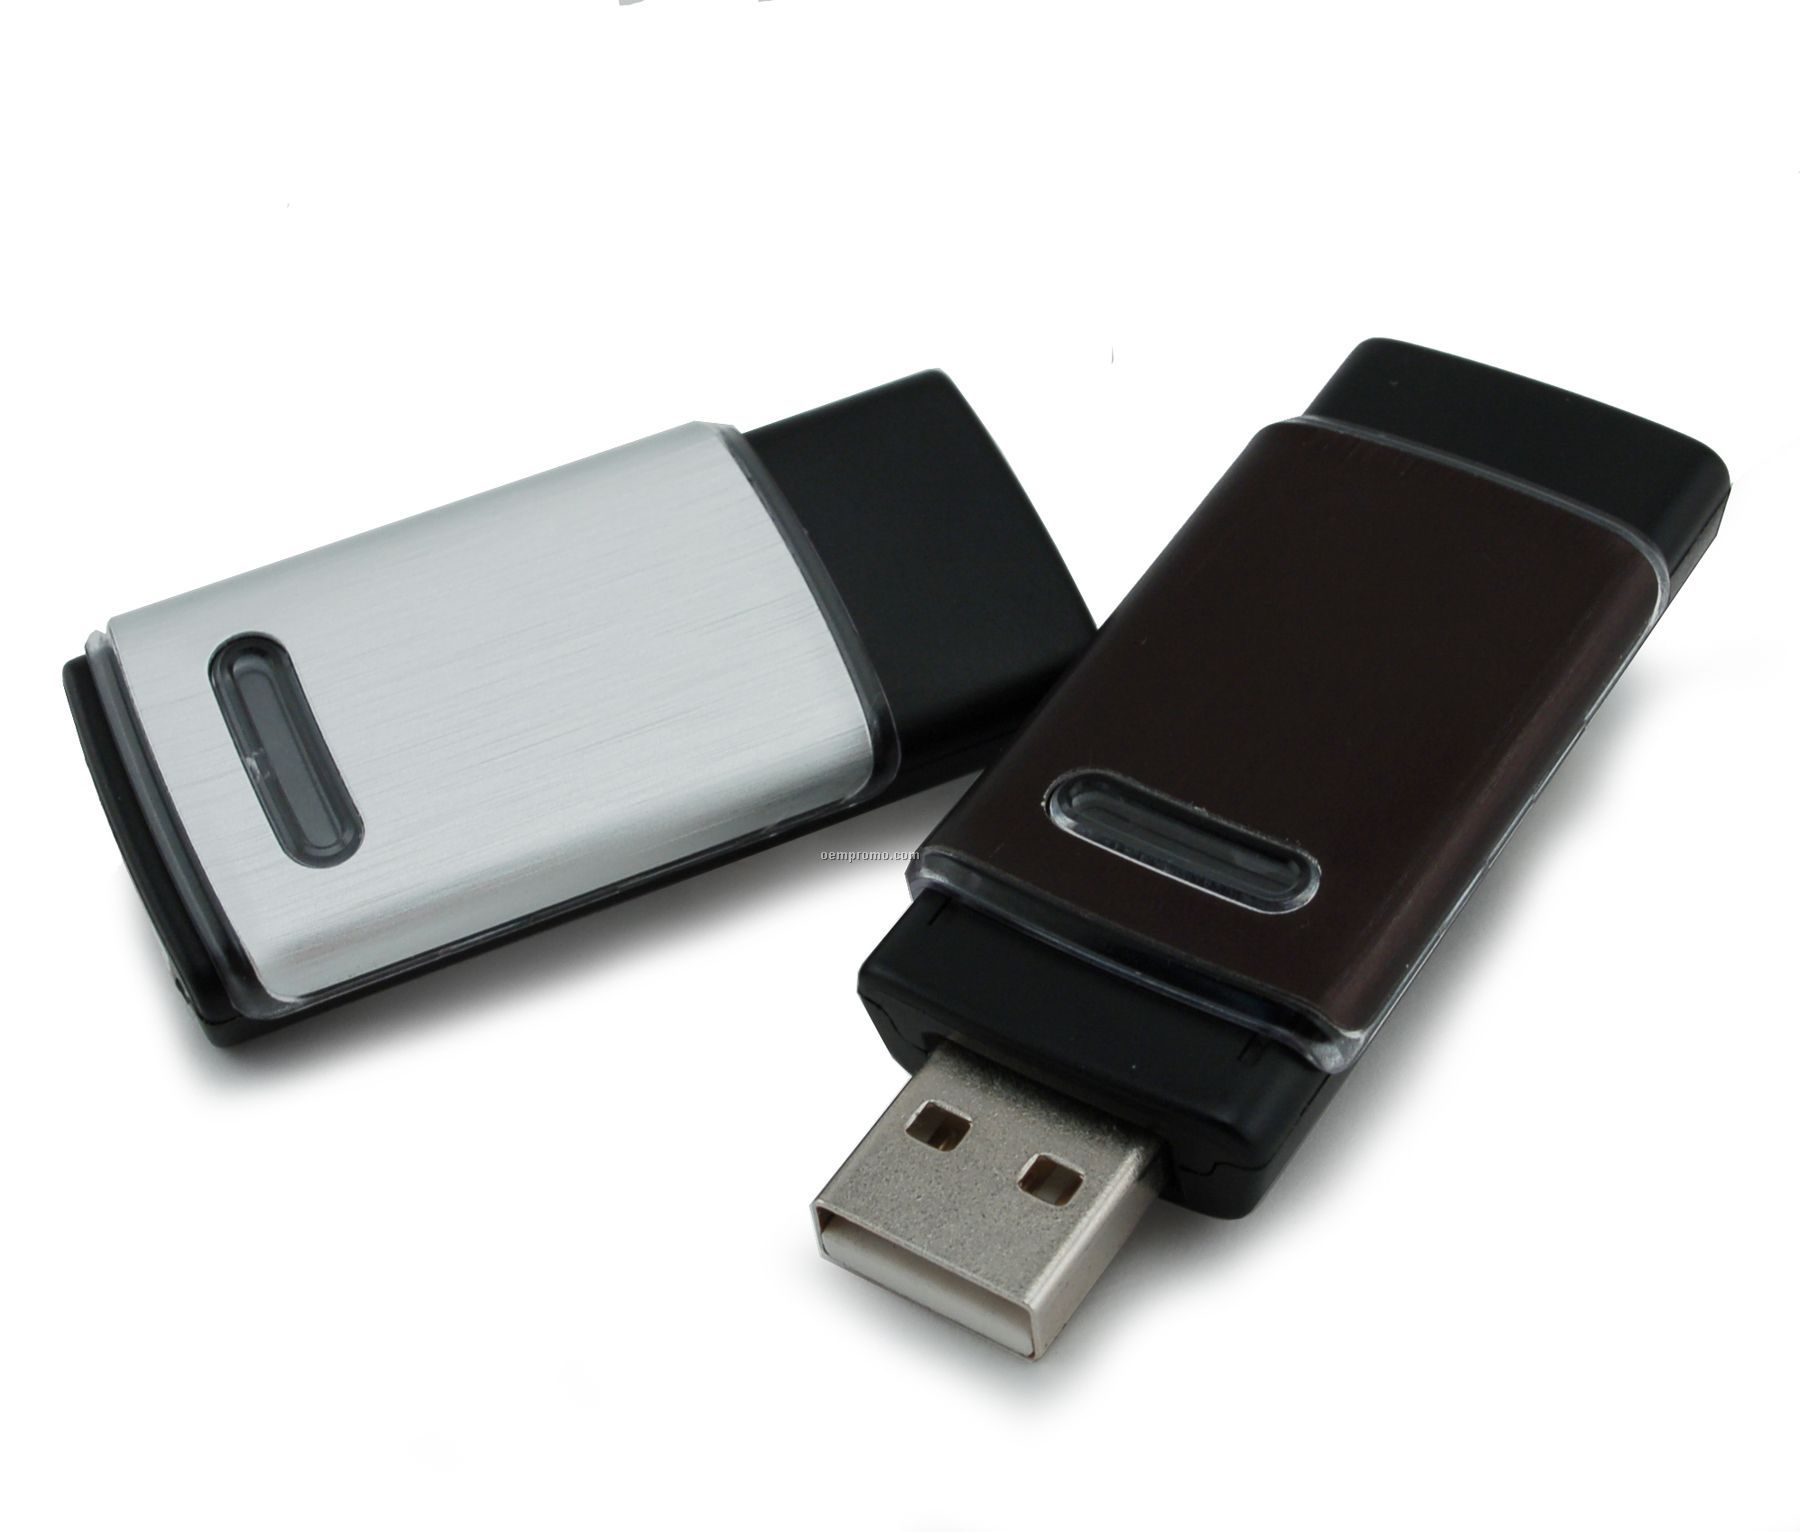 8 Gb Retractable USB Drive 600 Series